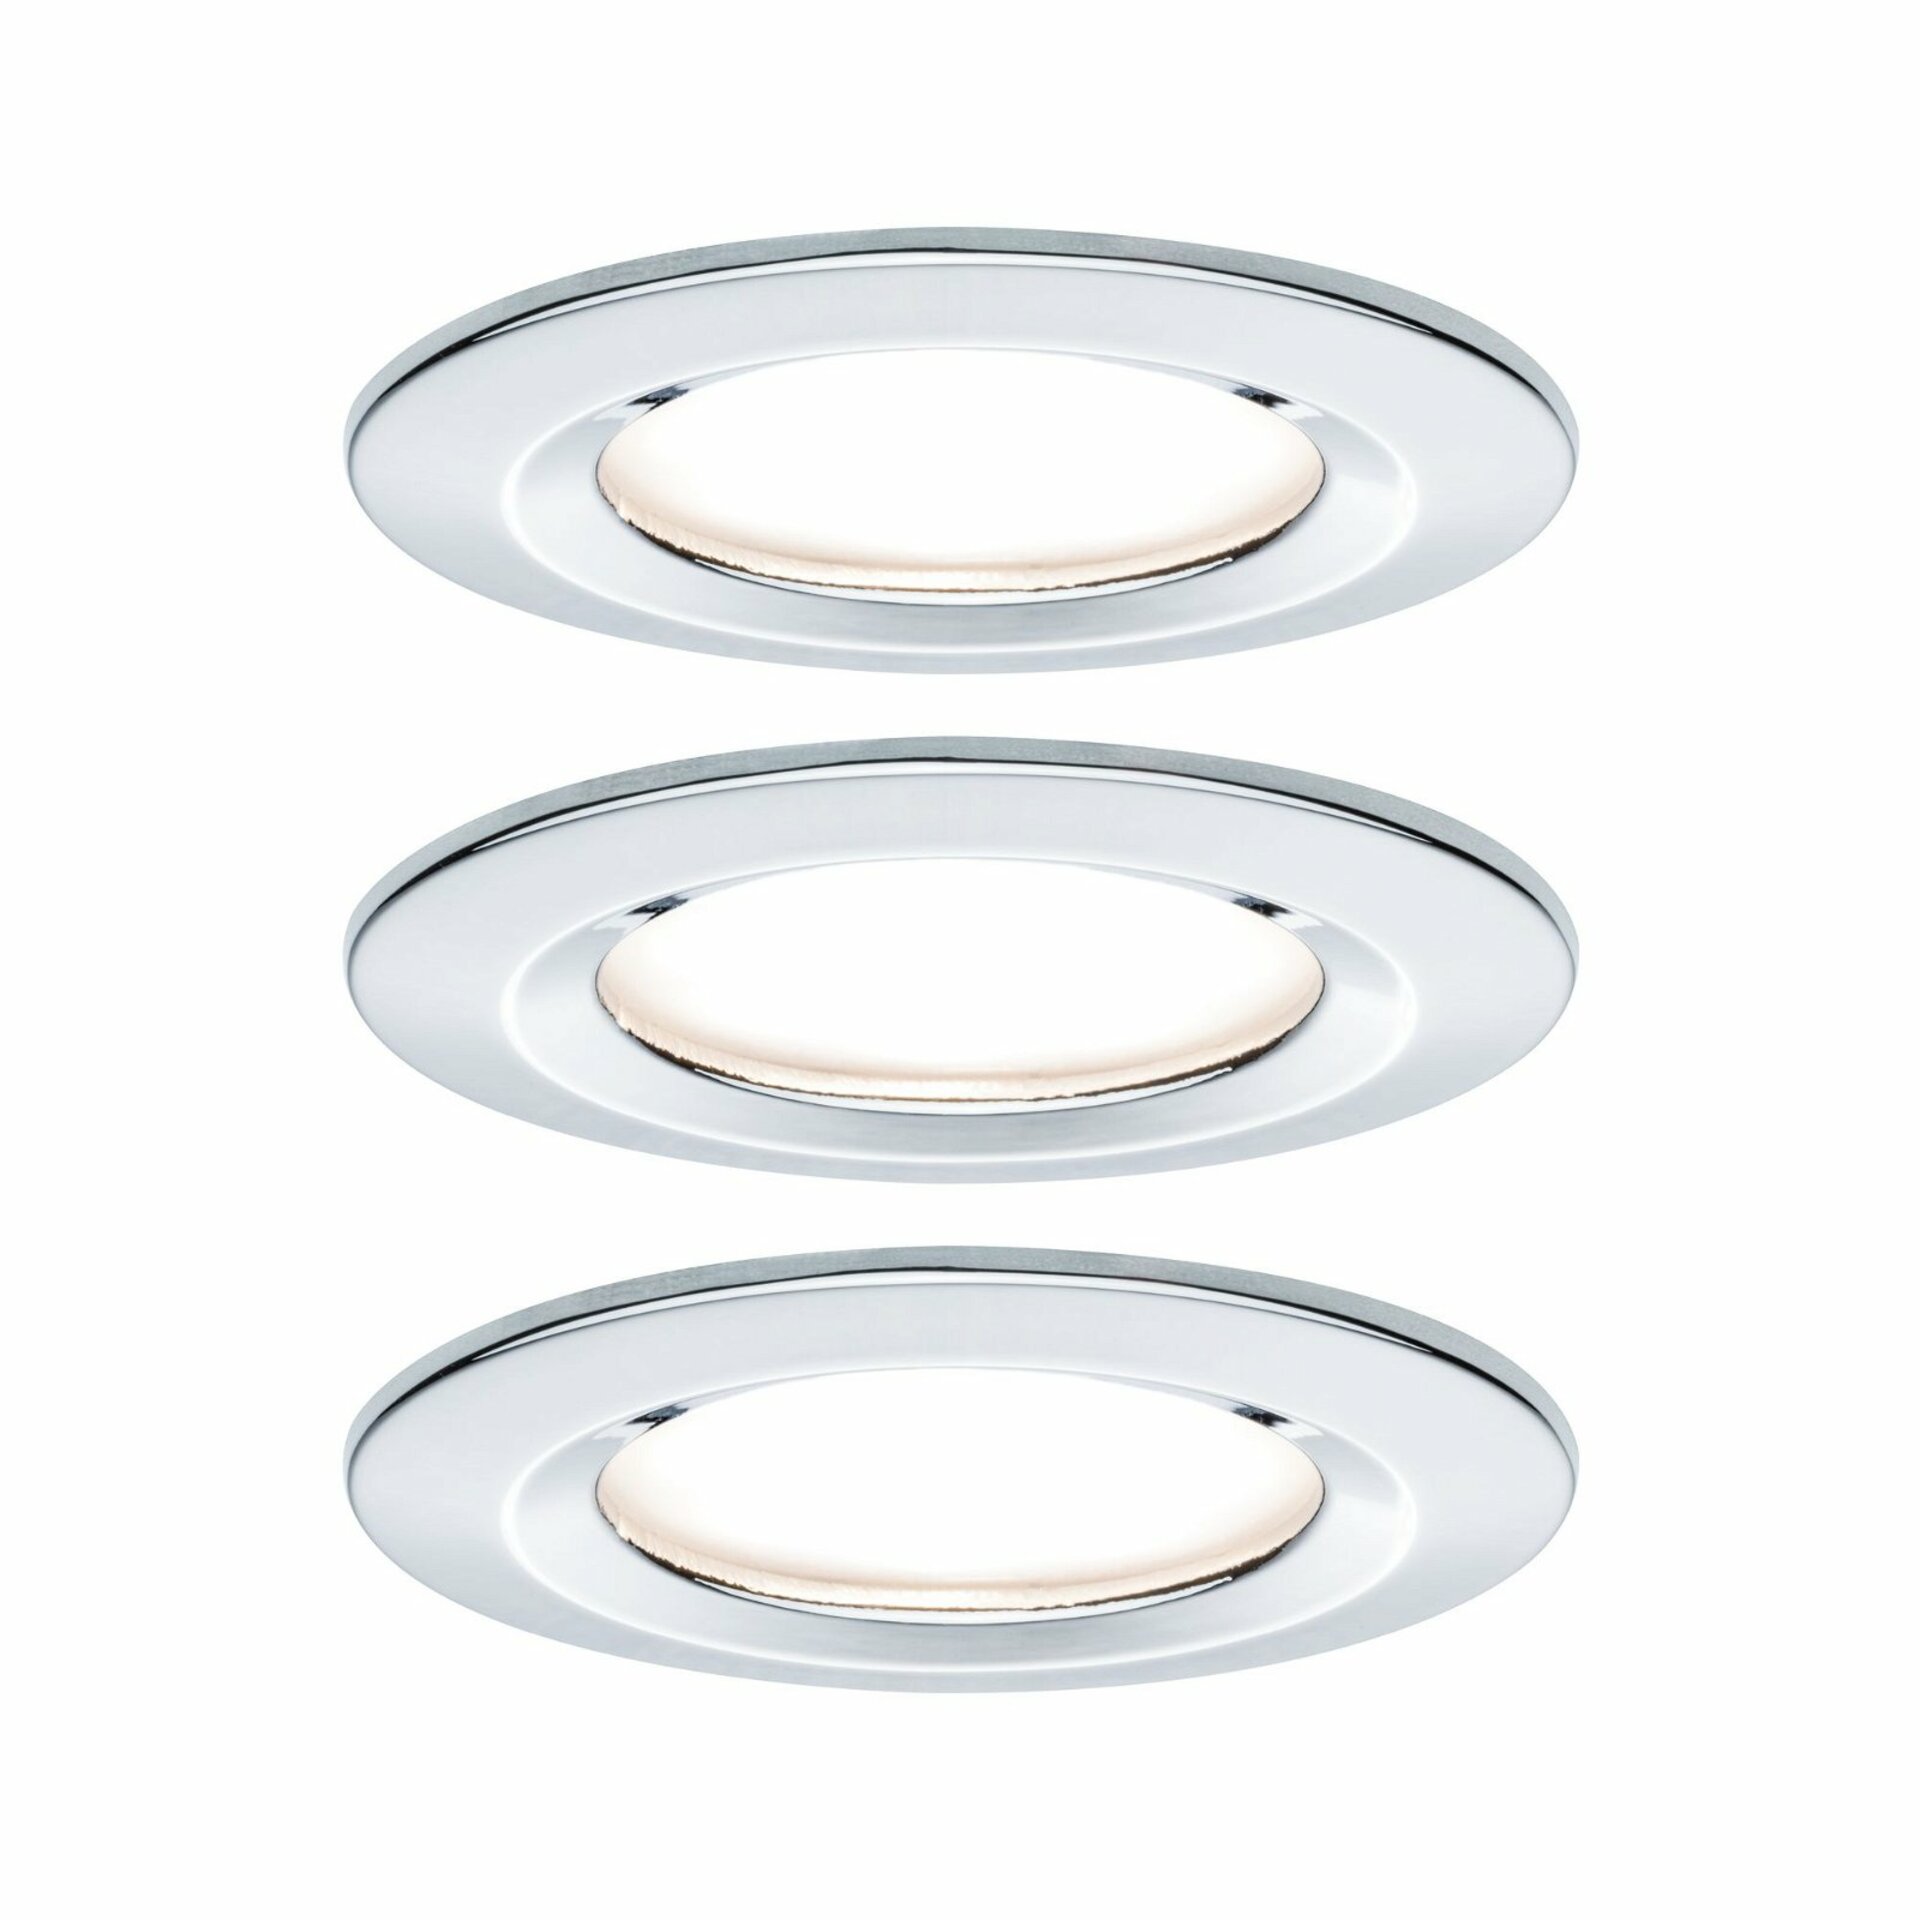 PAULMANN Vestavné svítidlo LED Nova kruhové 3x6,5W GU10 chrom nevýklopné 934.45 P 93445